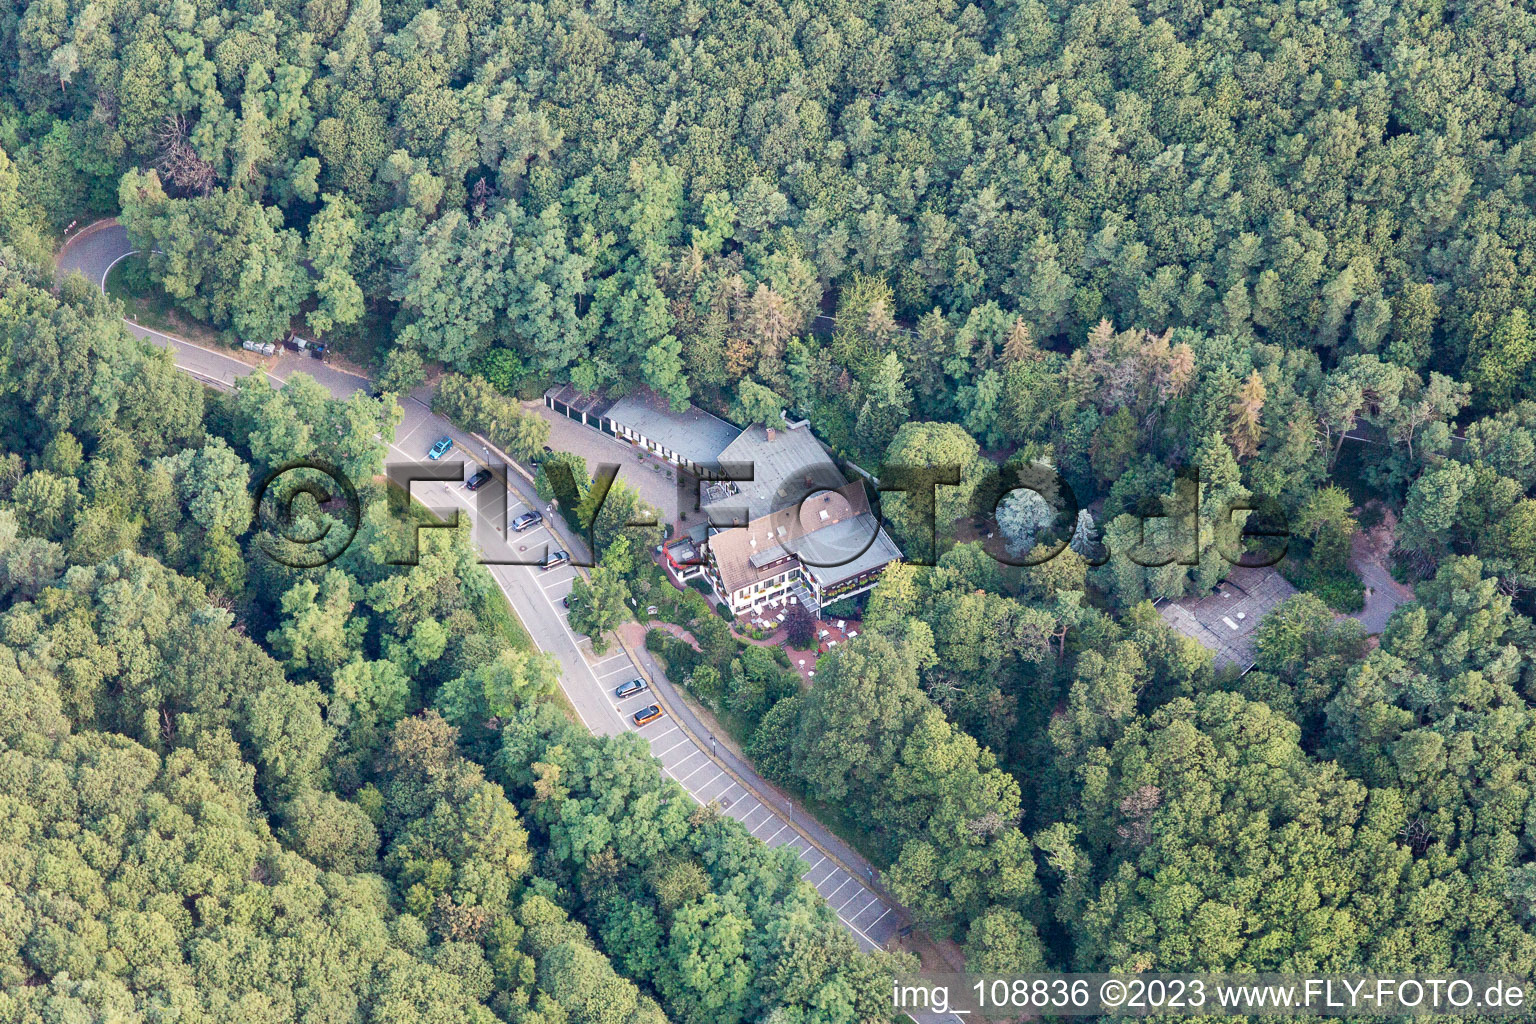 Luftbild von Sankt Martin im Bundesland Rheinland-Pfalz, Deutschland